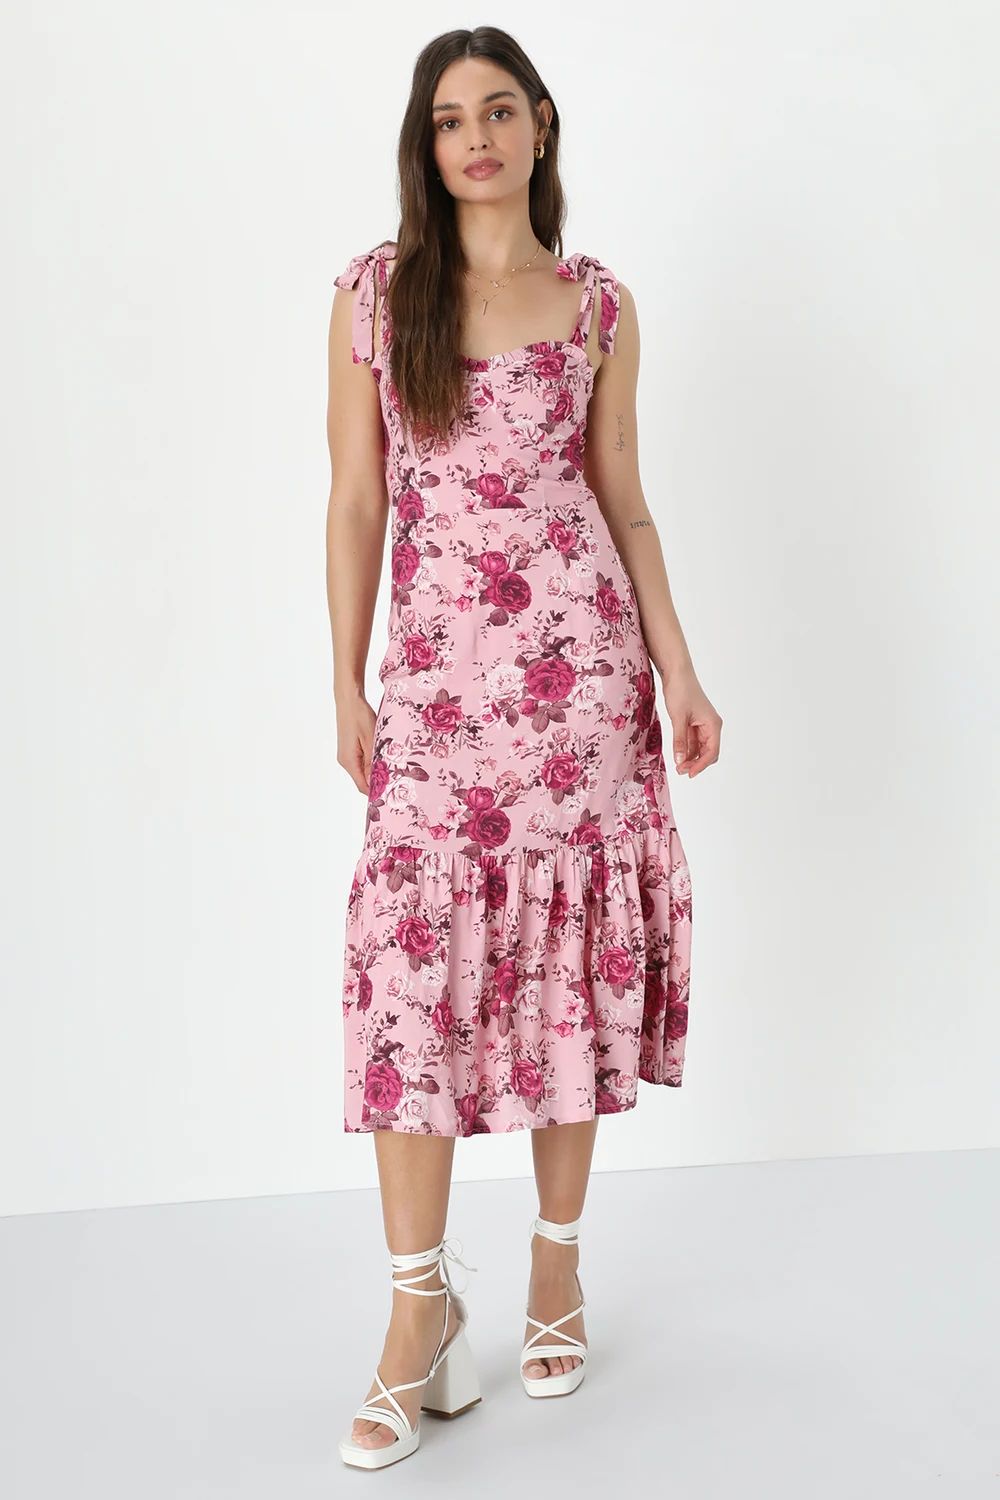 Confident Charm Pink Floral Bustier Tie-Strap Midi Dress | Lulus (US)